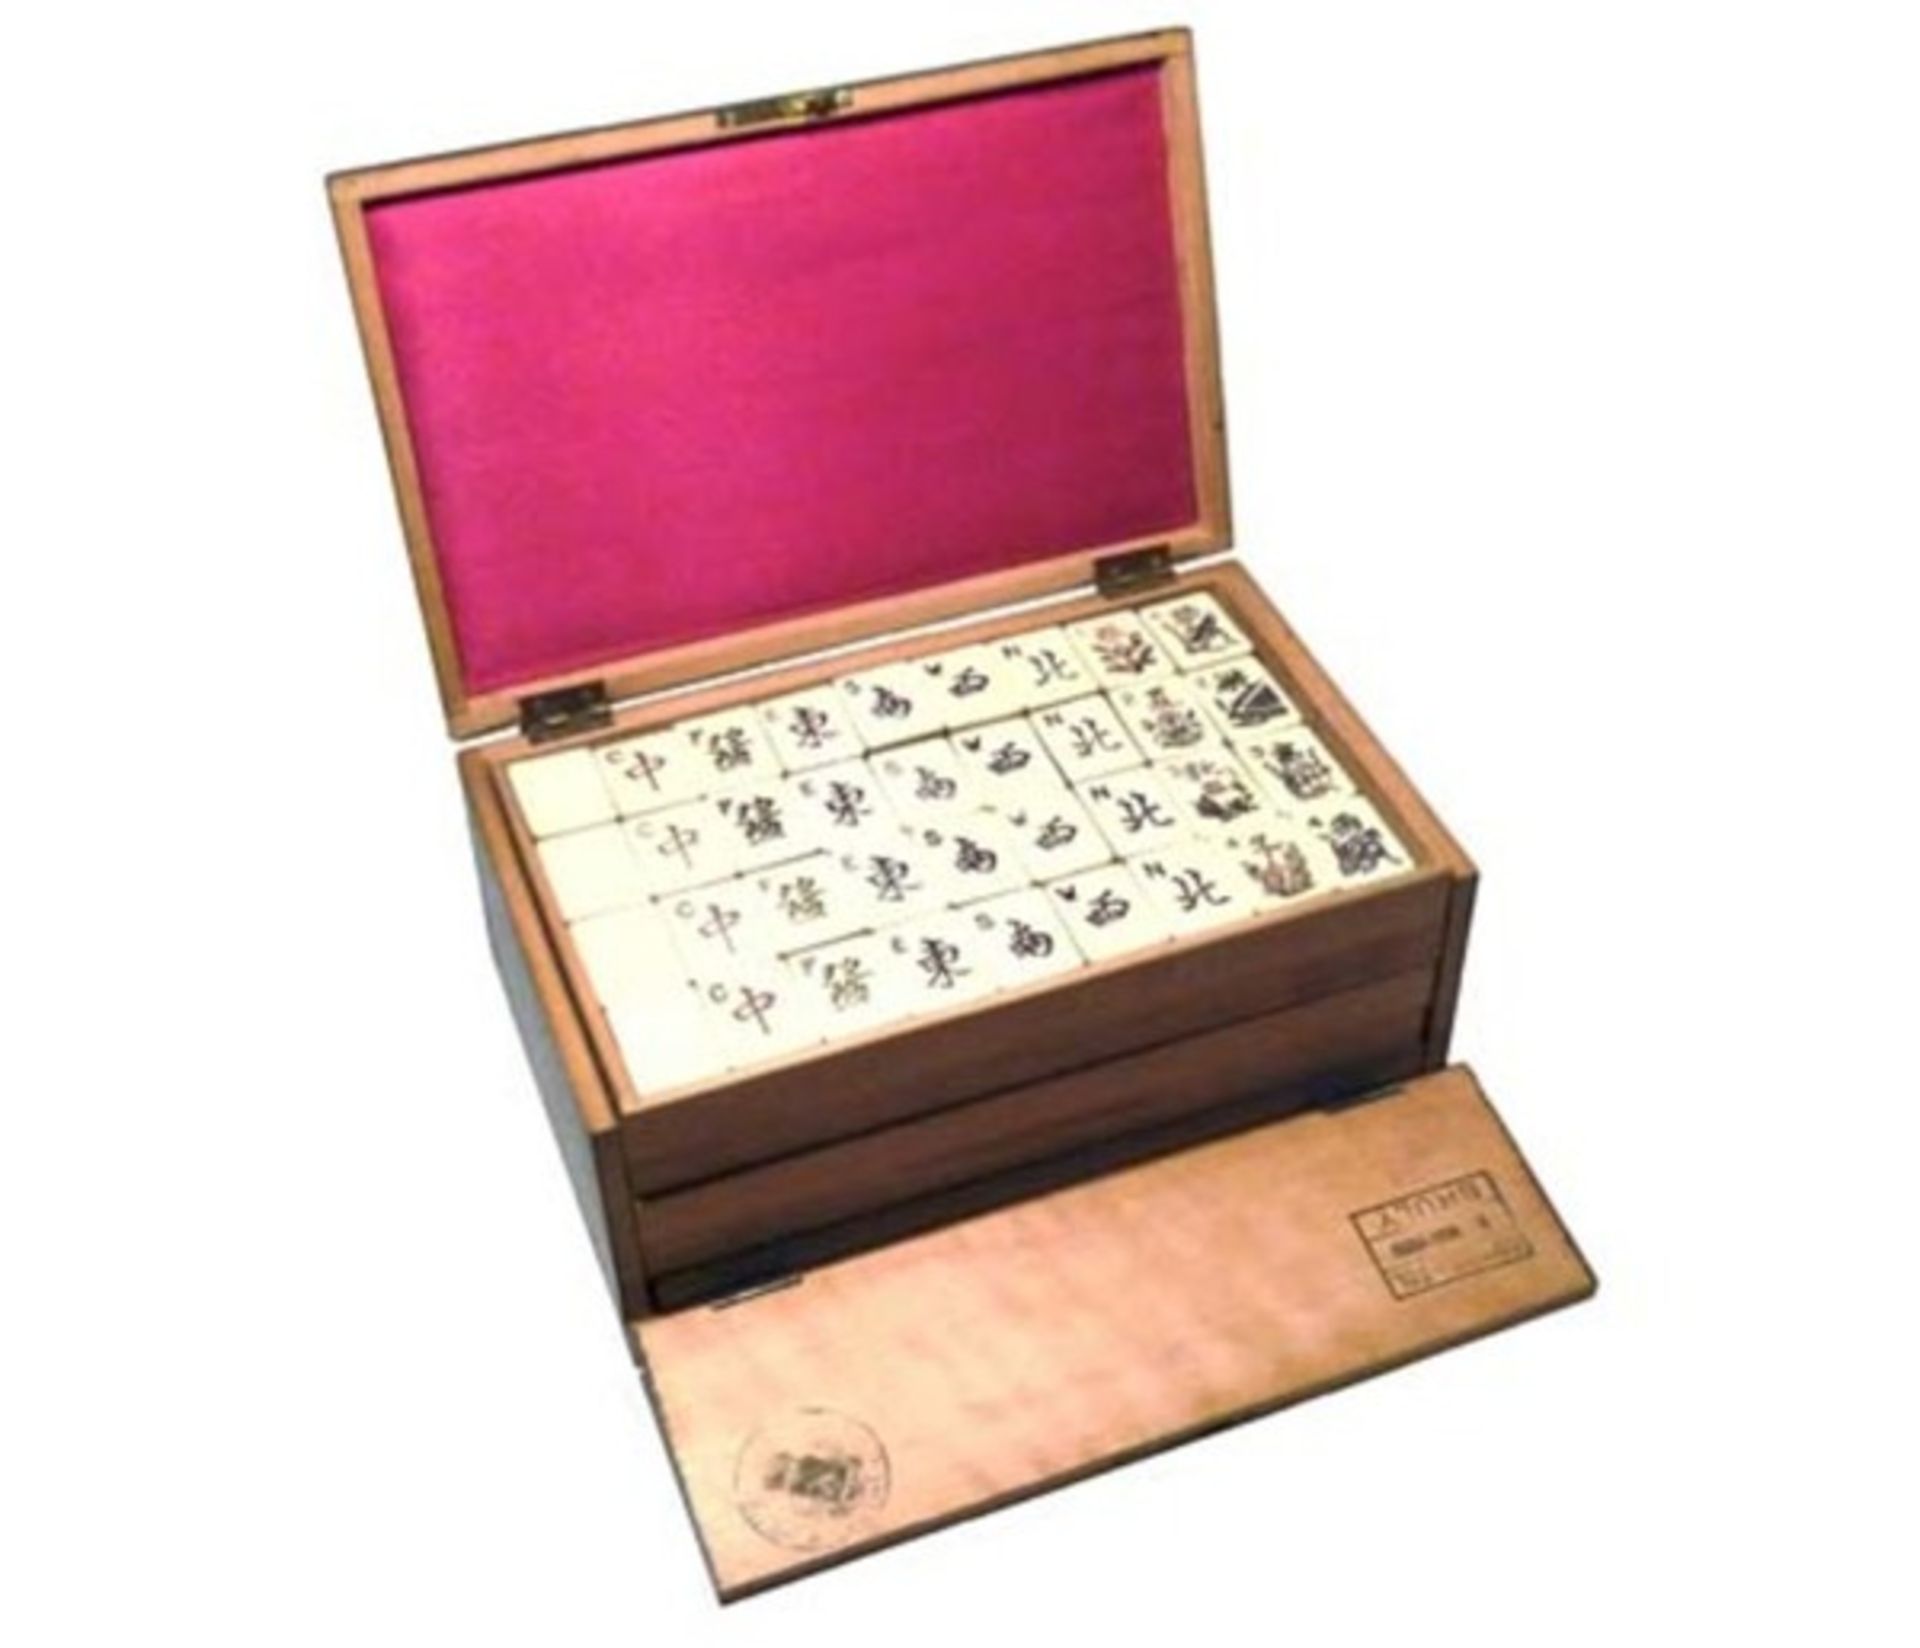 (Mahjong) Mahjong Europees, Golconda Duitsland, 1925 - Bild 2 aus 14